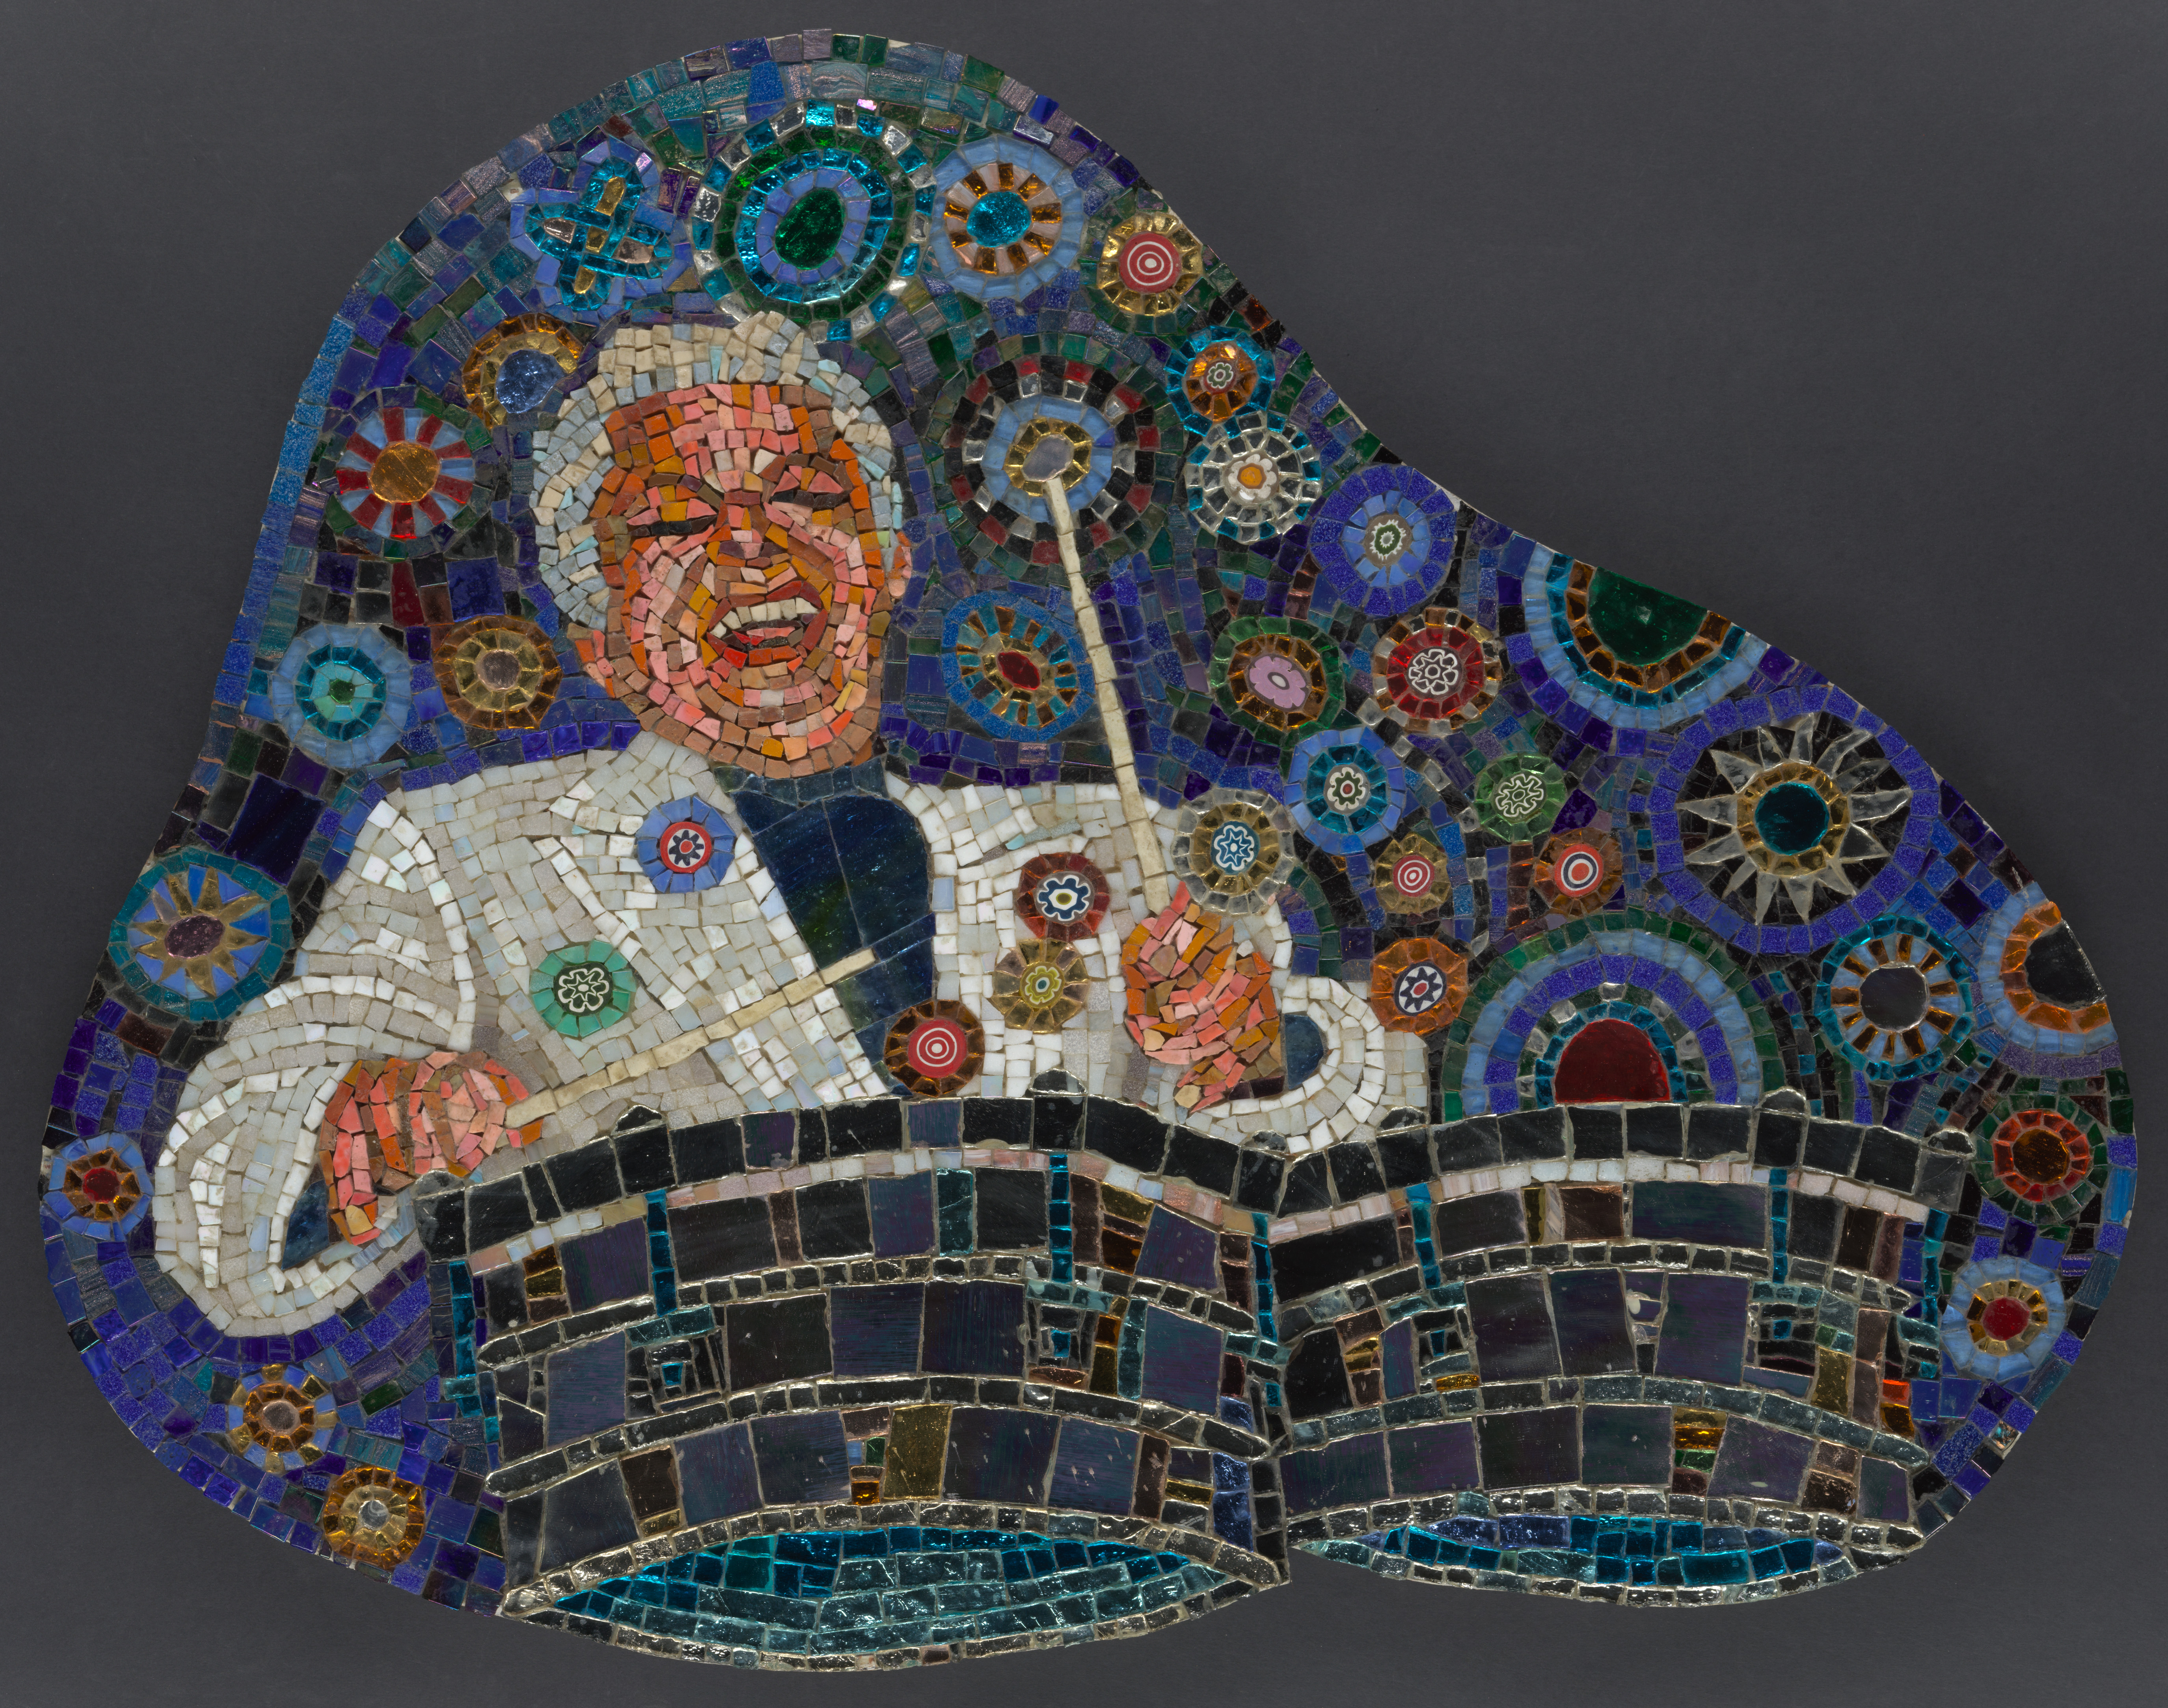 A imagem de um mosaico mostrava o famoso músico Tito Puente com um sorriso exuberante tocando bateria alegremente em um fundo azul repleto de círculos multicoloridos.